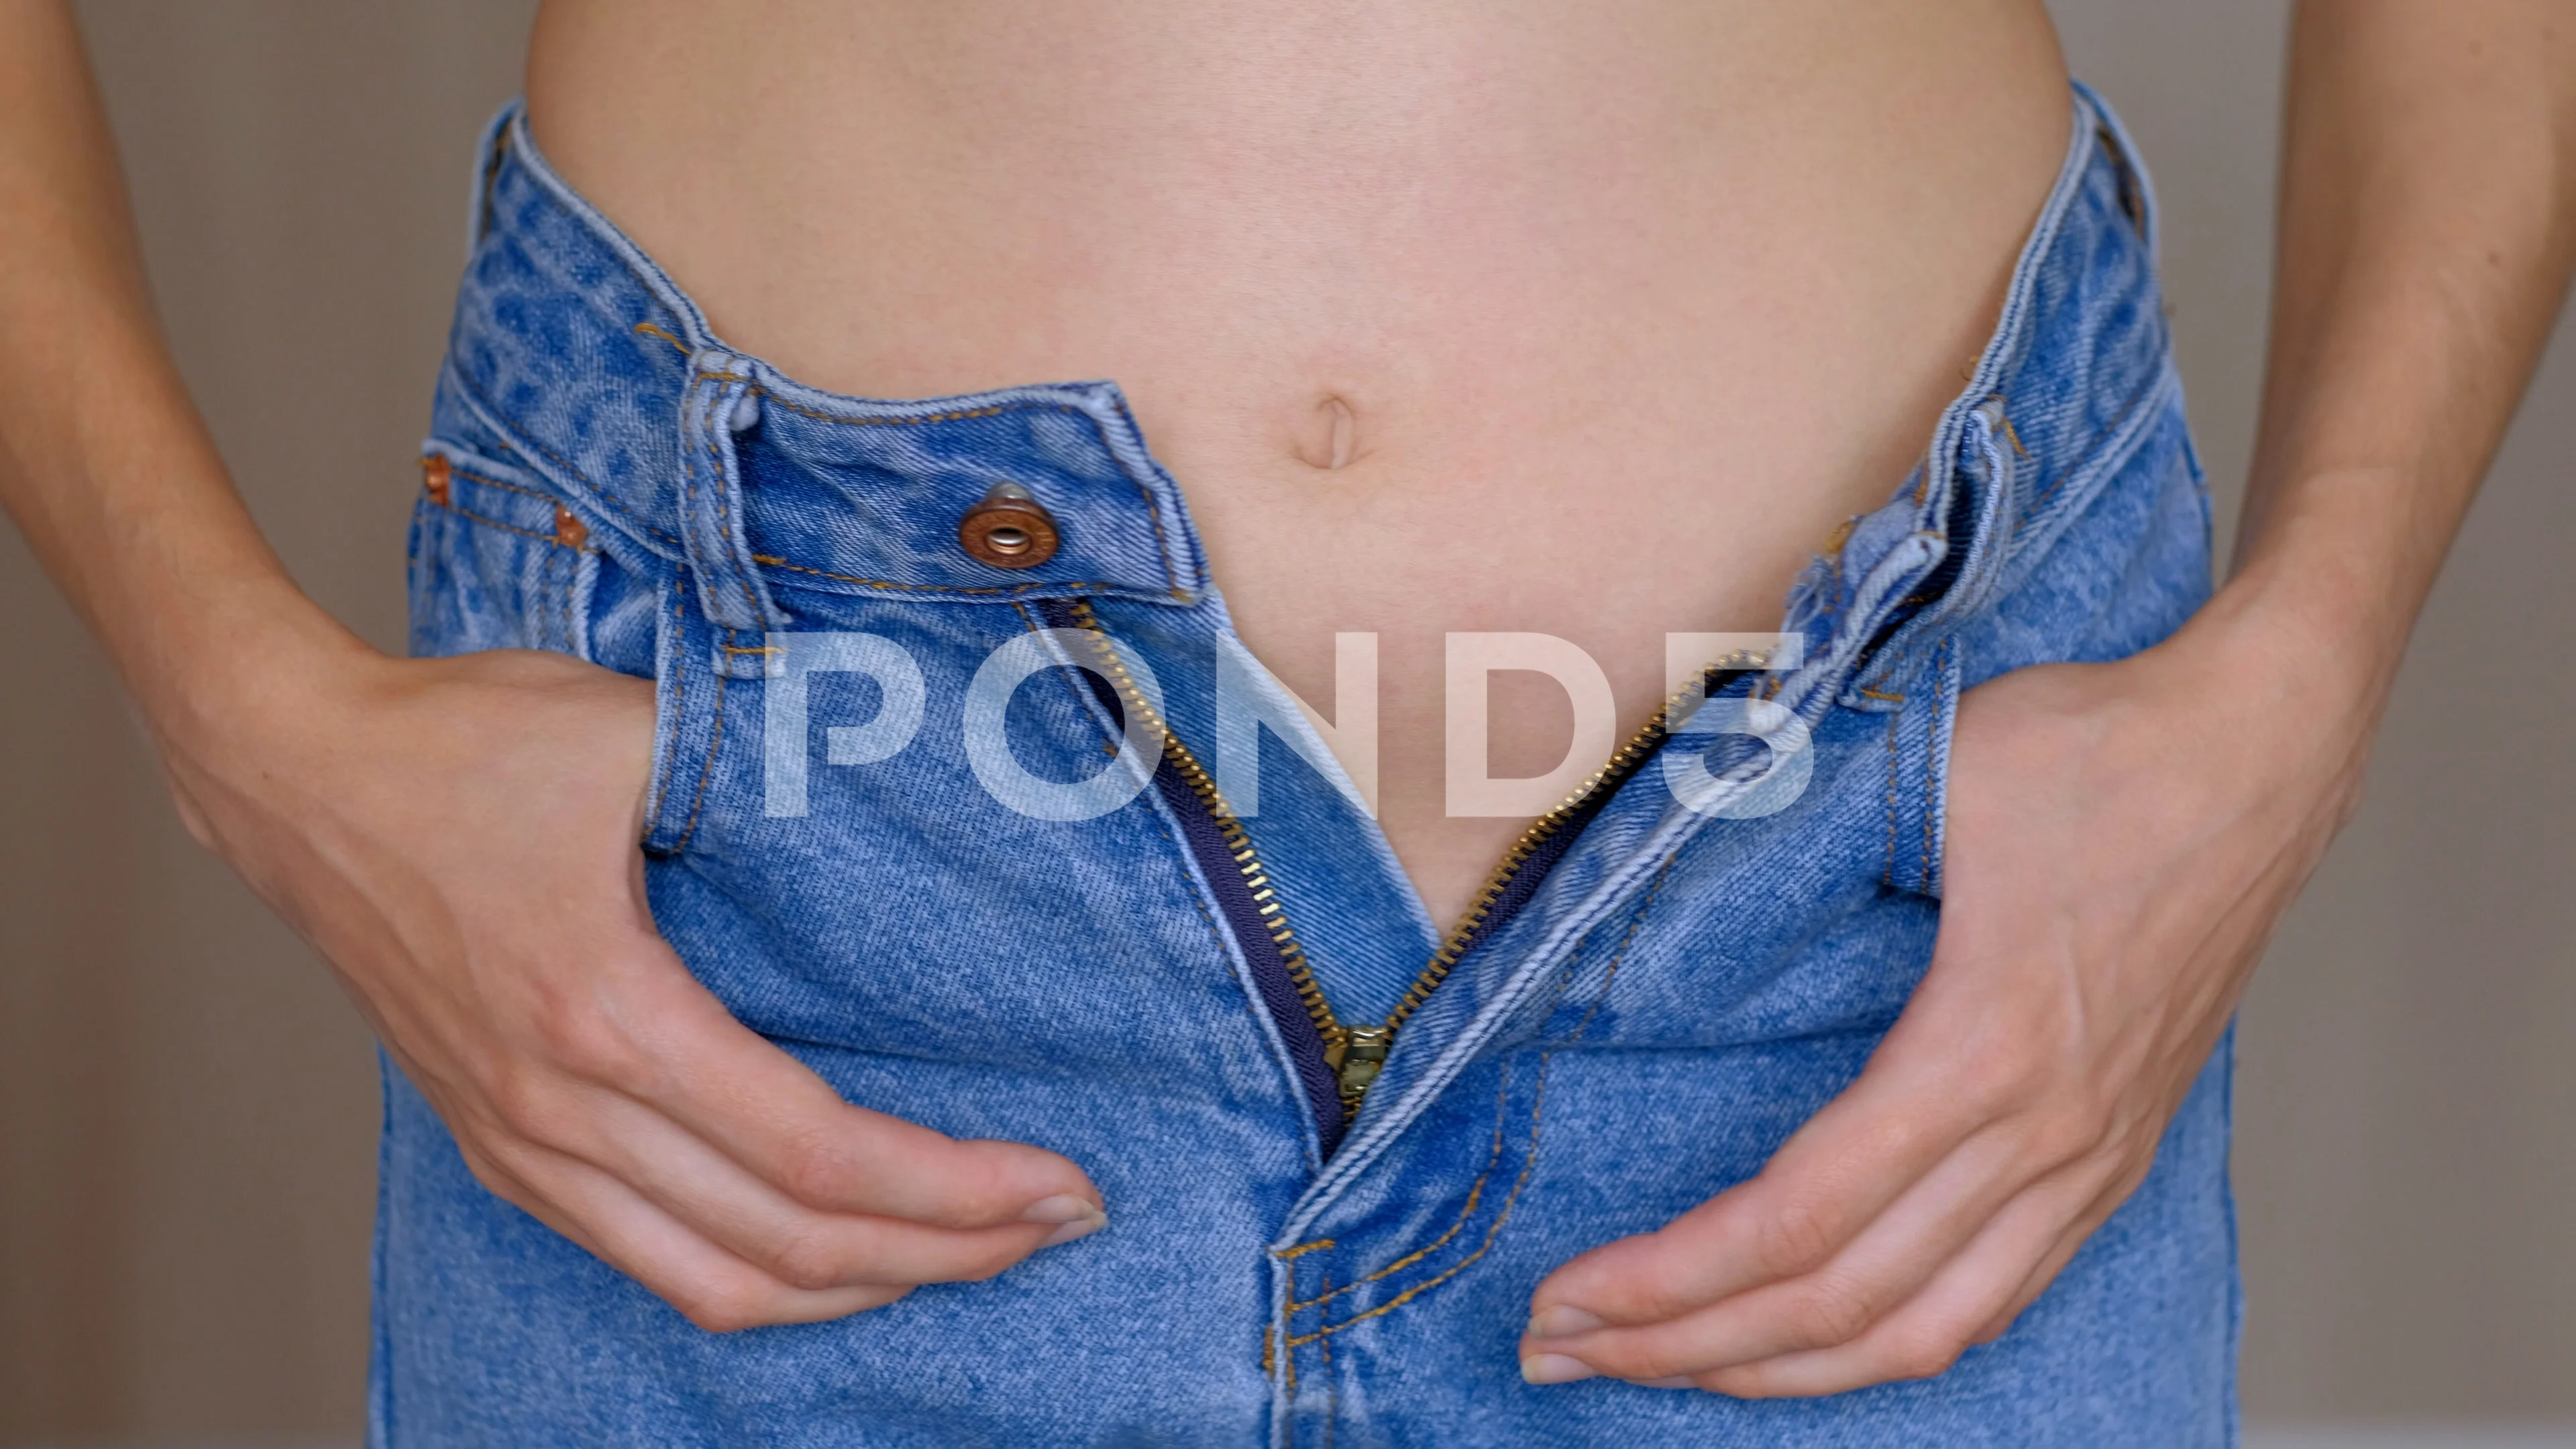 Girls In Unzipped Jeans